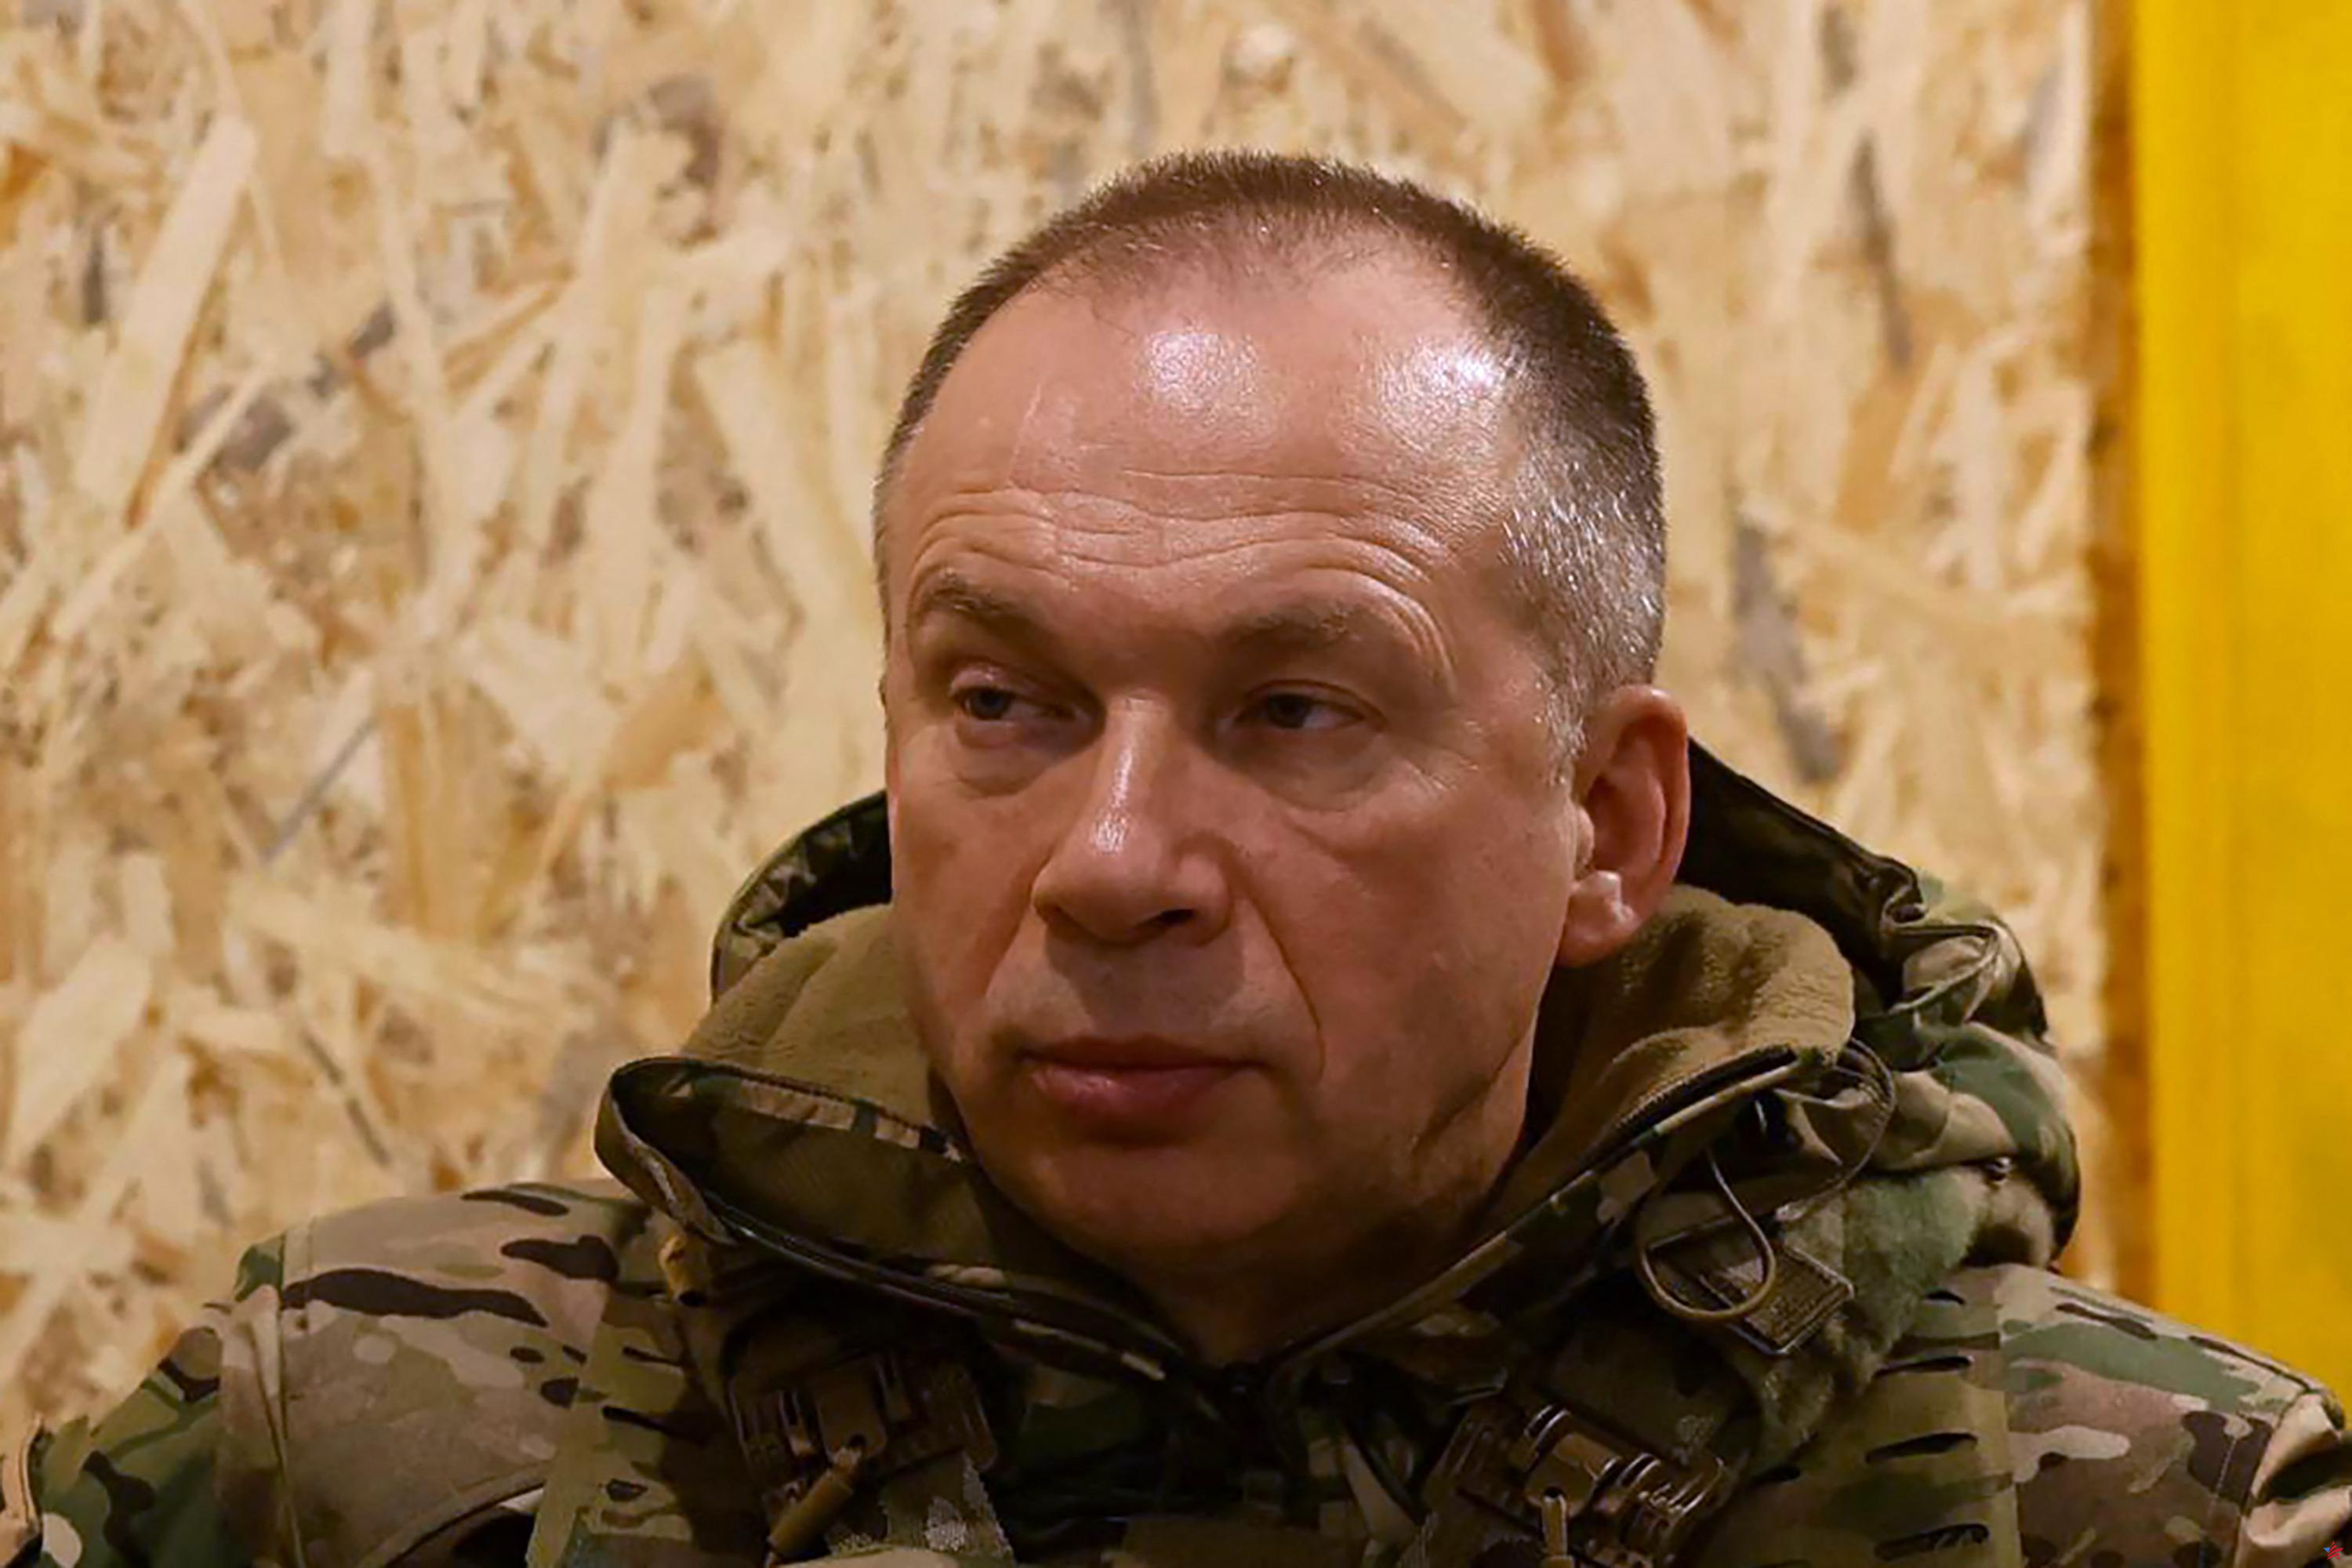 Guerra en Ucrania: el comandante del ejército ucraniano dice que sus tropas están luchando con "pocas o ninguna" armas y municiones